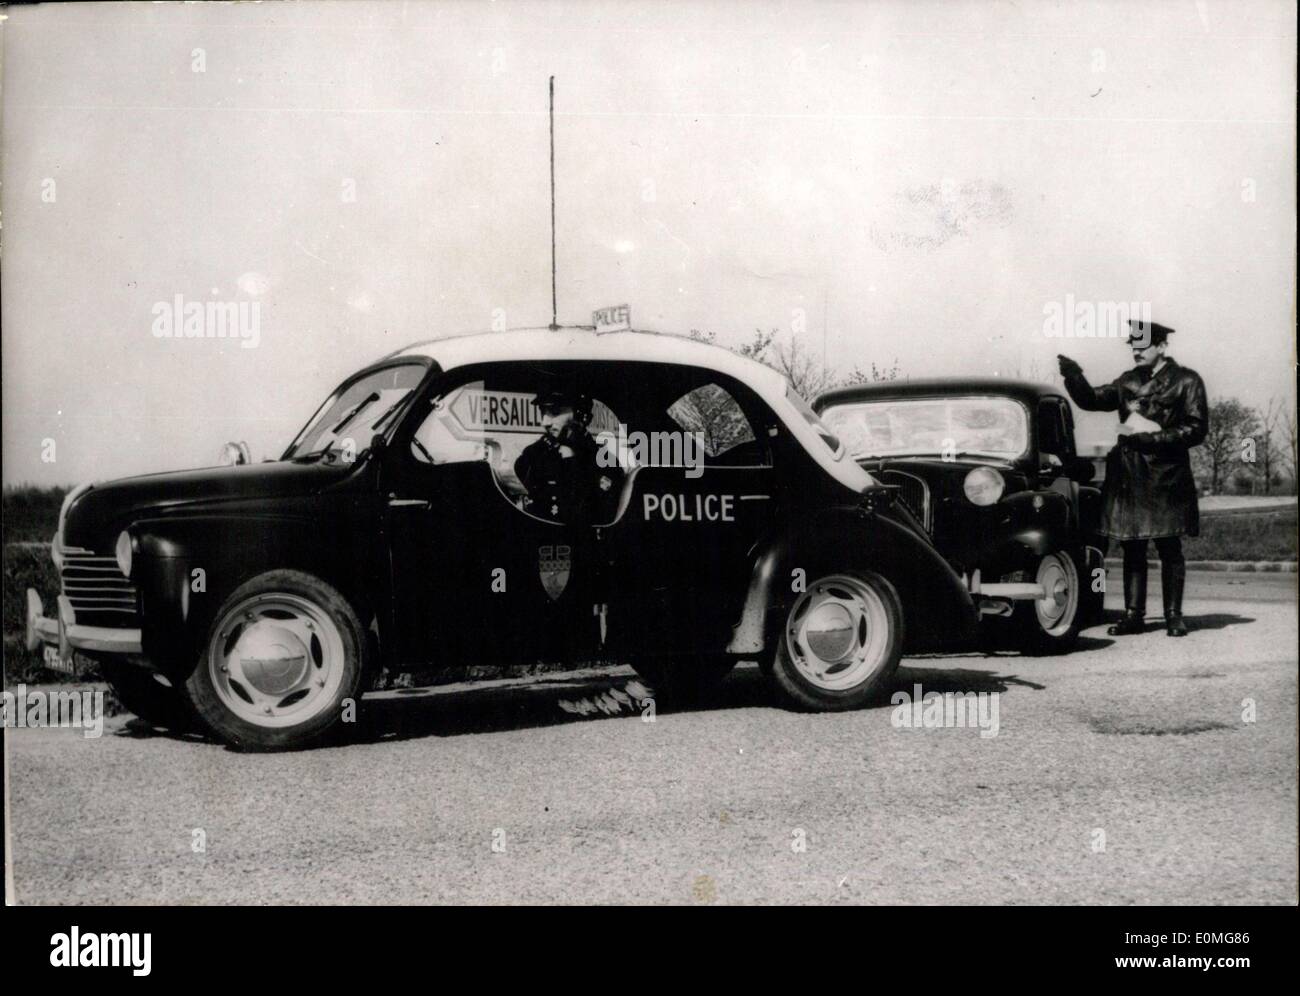 Apr. 22, 1955 - Parigi poliziotti del traffico per avere nuove Speedy pattuglia delle vetture: il nuovo 4 H.P. Auto di pattuglia messo in servizio dalla polizia di Parigi per il traffico dei poliziotti. La vettura è dotata di un ricevitore radio e del mittente. Foto Stock